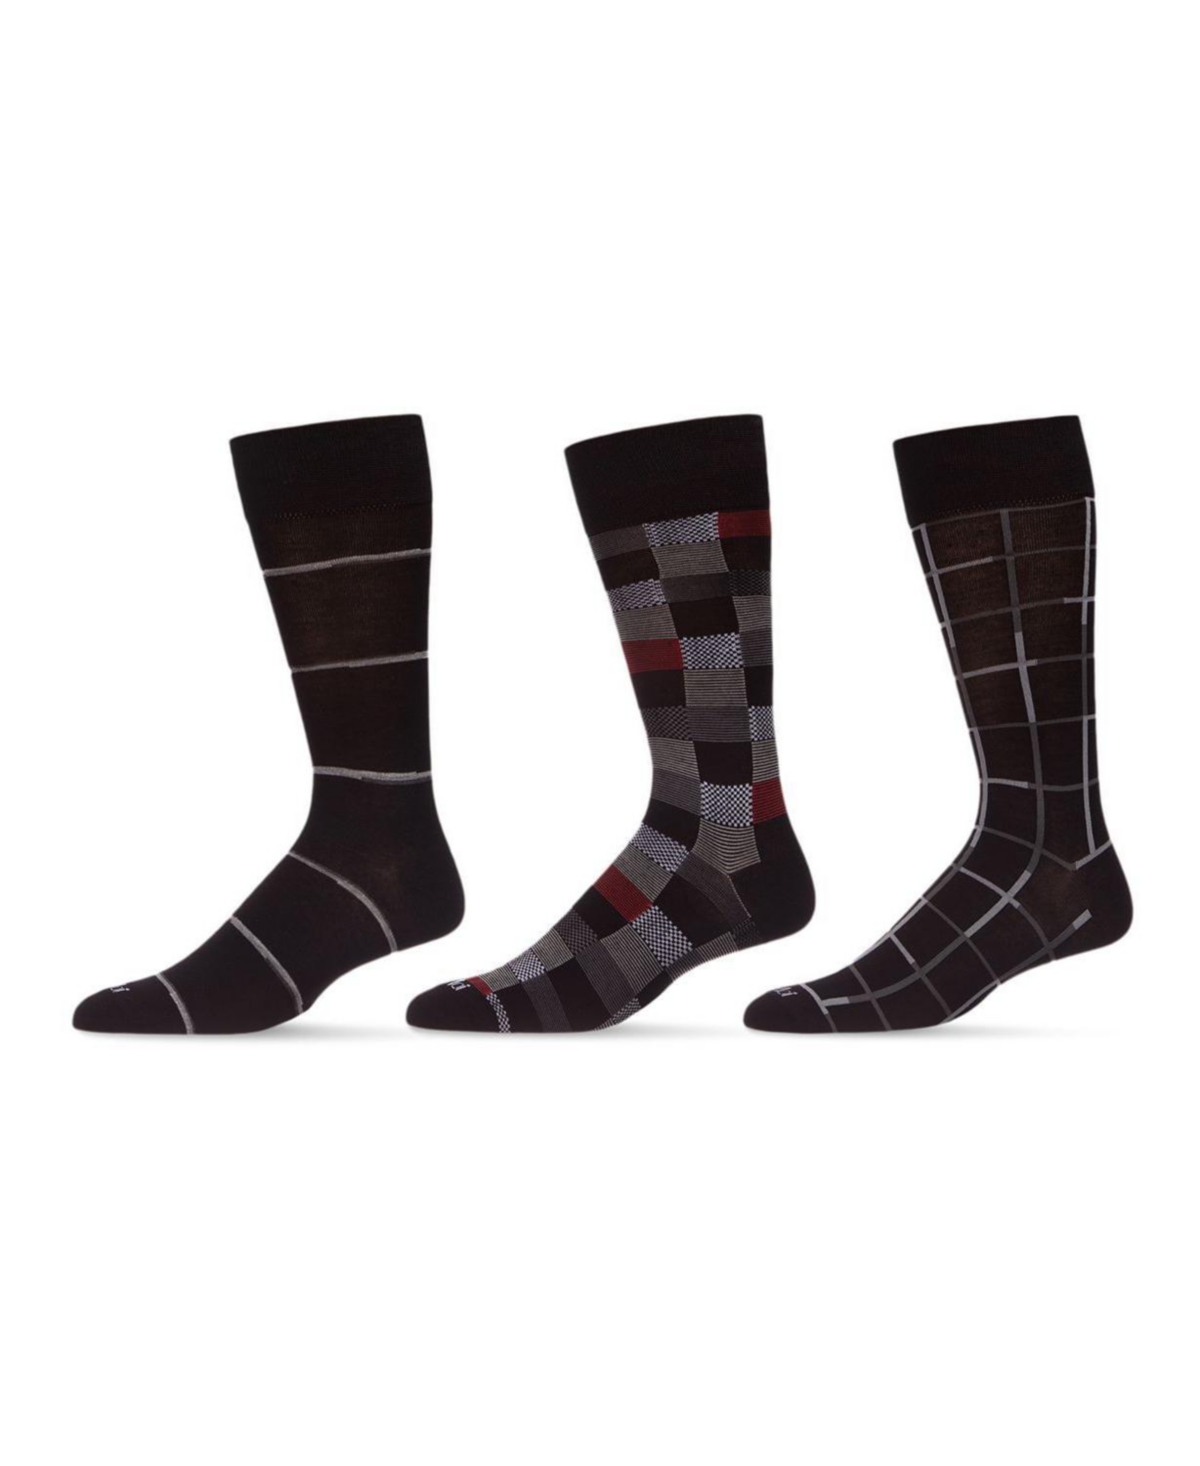 Men's Basic Assortment Socks, Pack of 3 - Navy